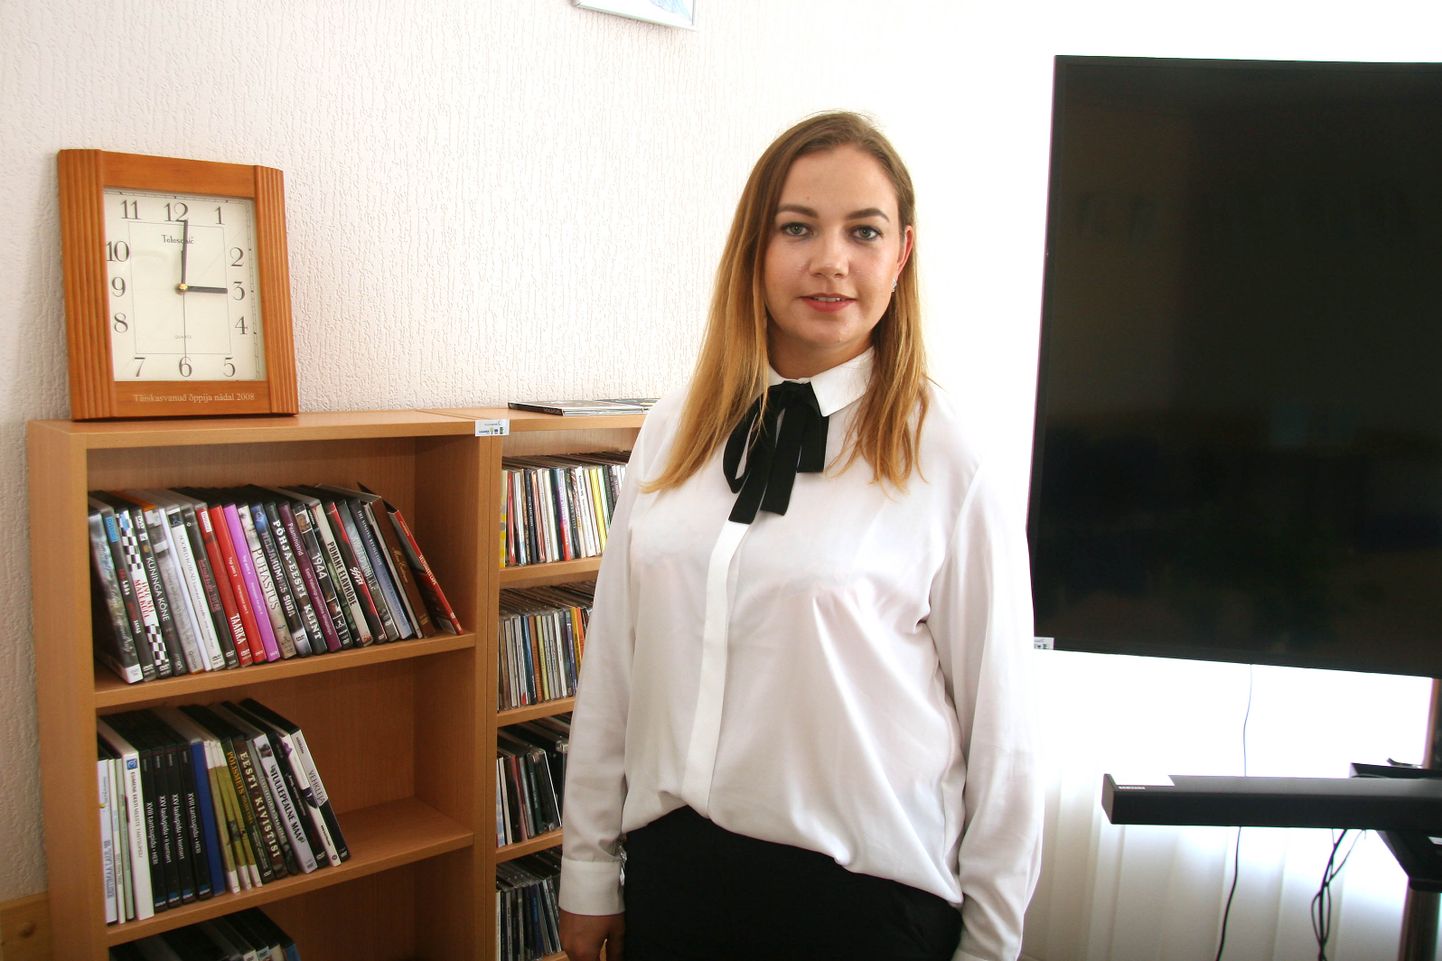 Эвелин Данилов больше года в качестве исполняющего обязанности директора руководила центральной библиотекой Йыхви.